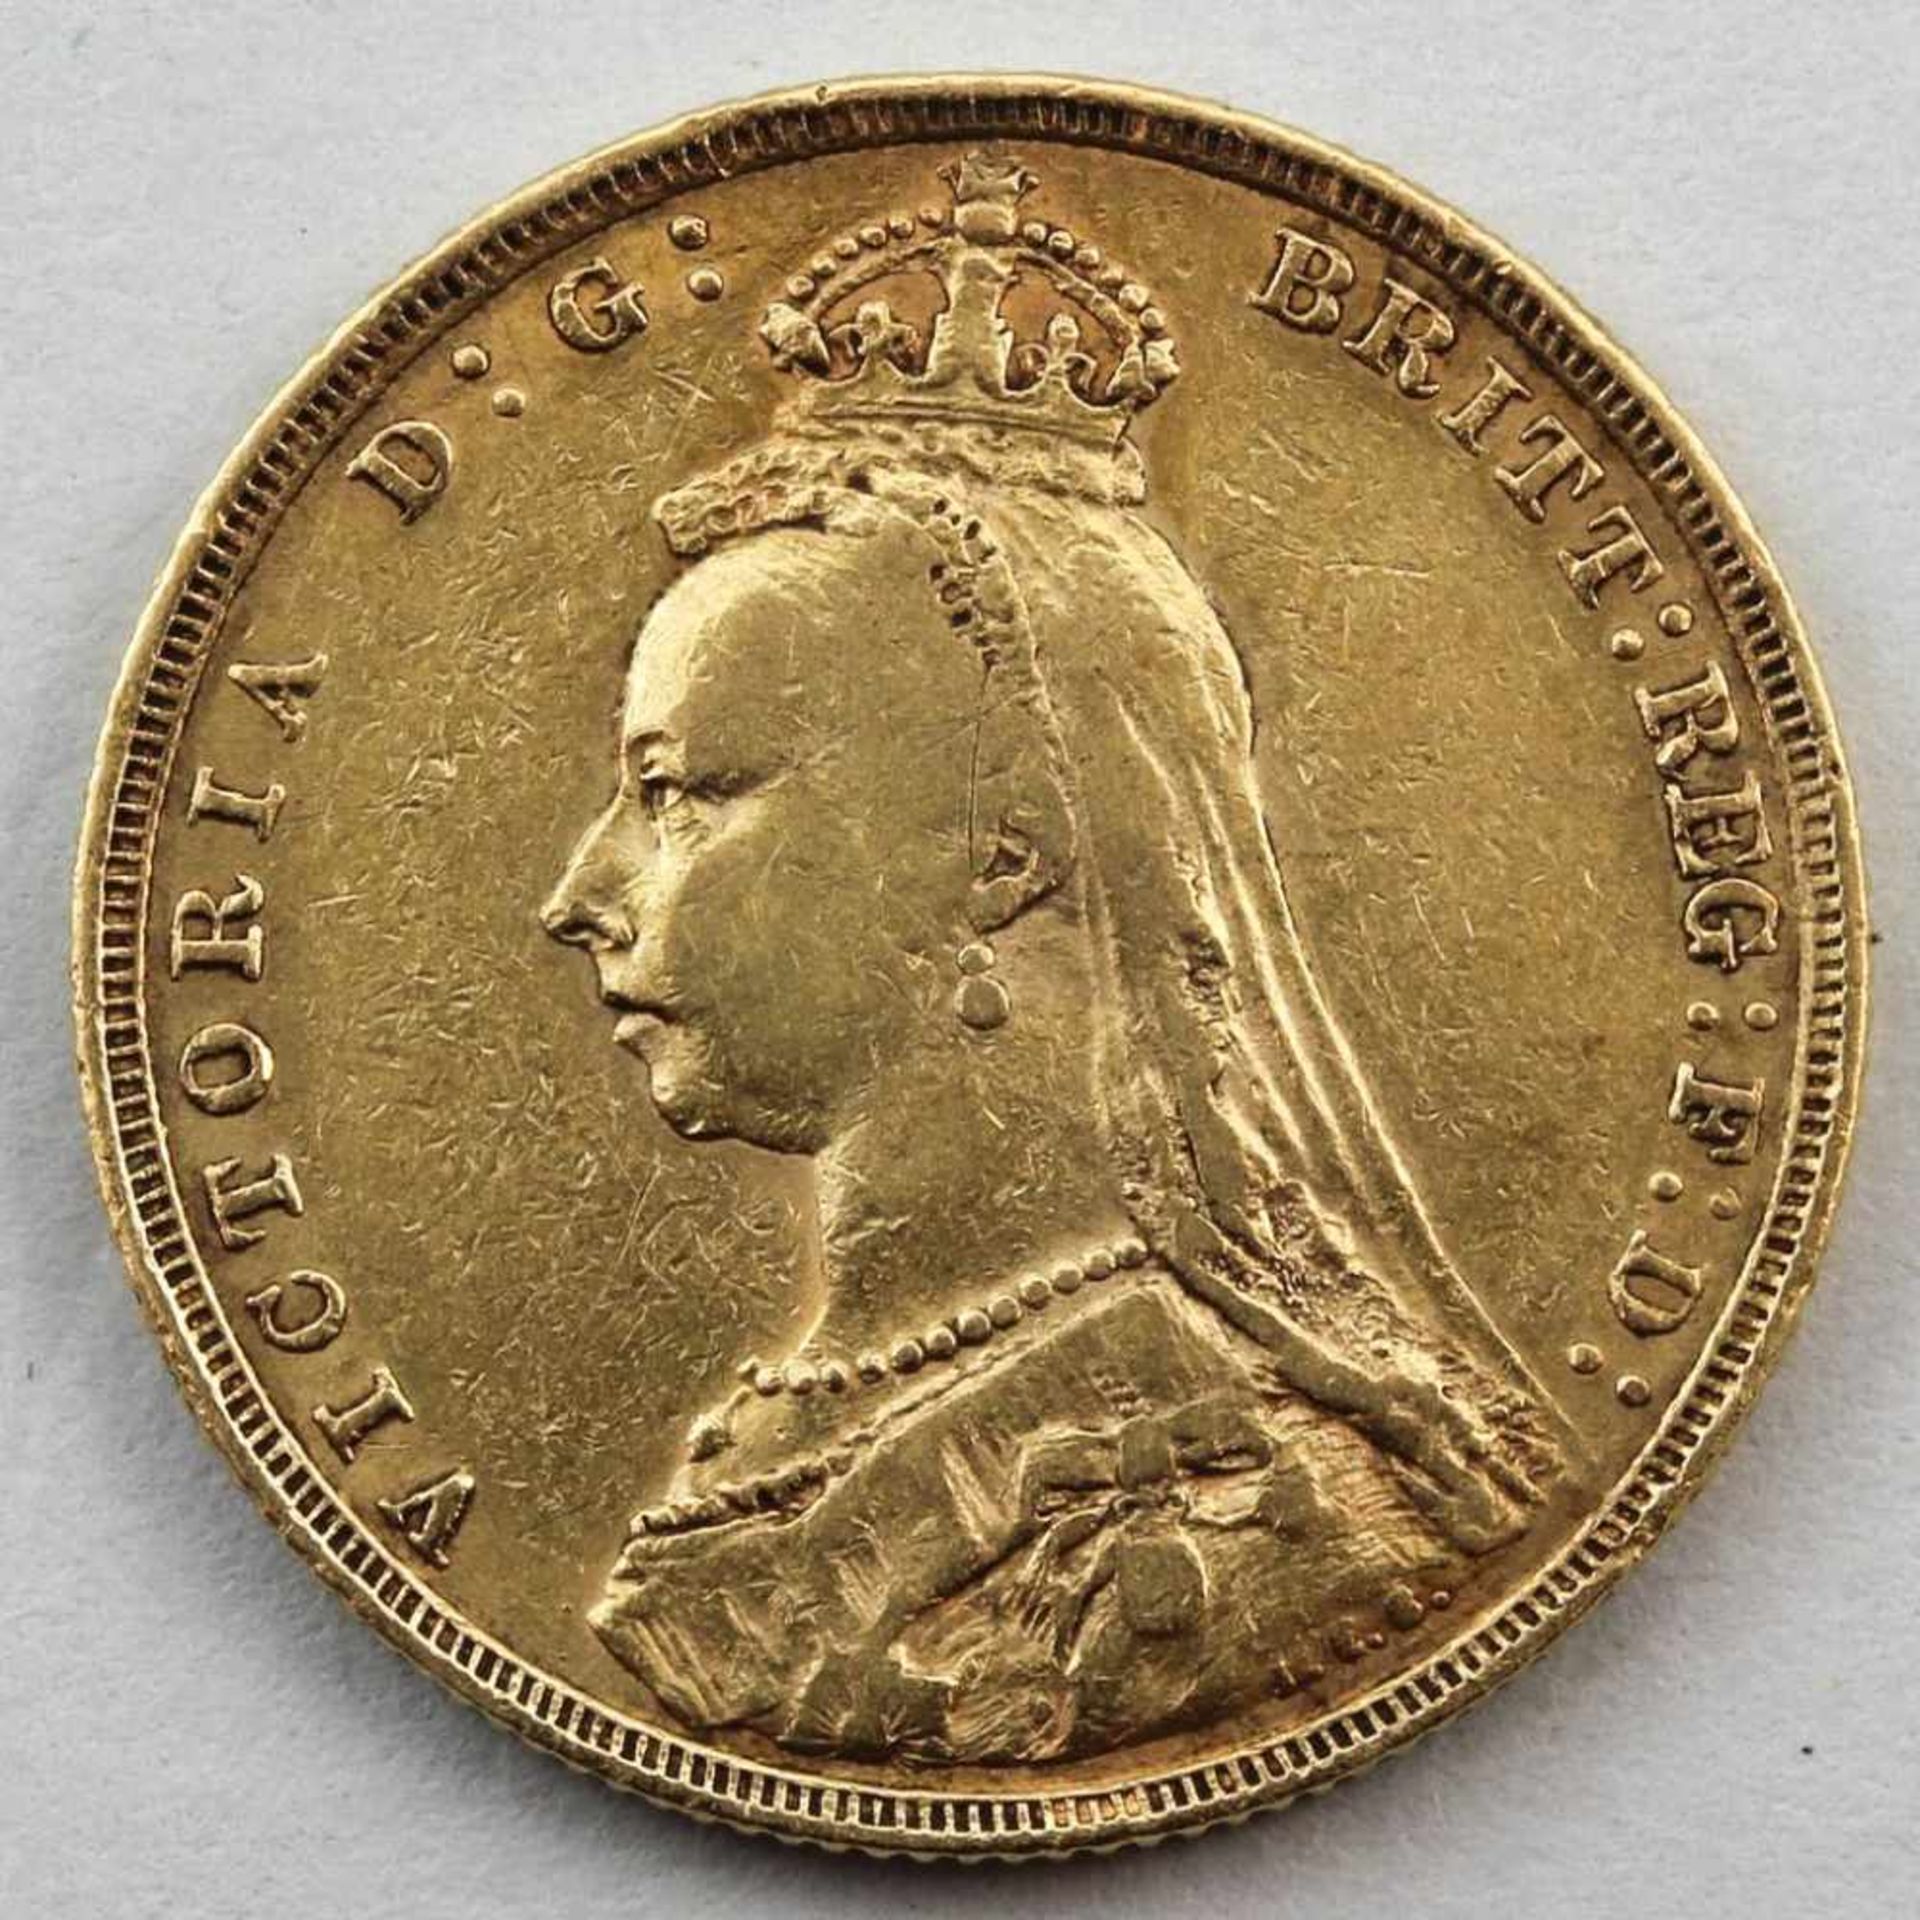 Goldmünze, England, Victoria, 1 Sovereign, 1892.917/000 GG, 7,97 g. ss.- - -19.33 % buyer's - Bild 2 aus 2